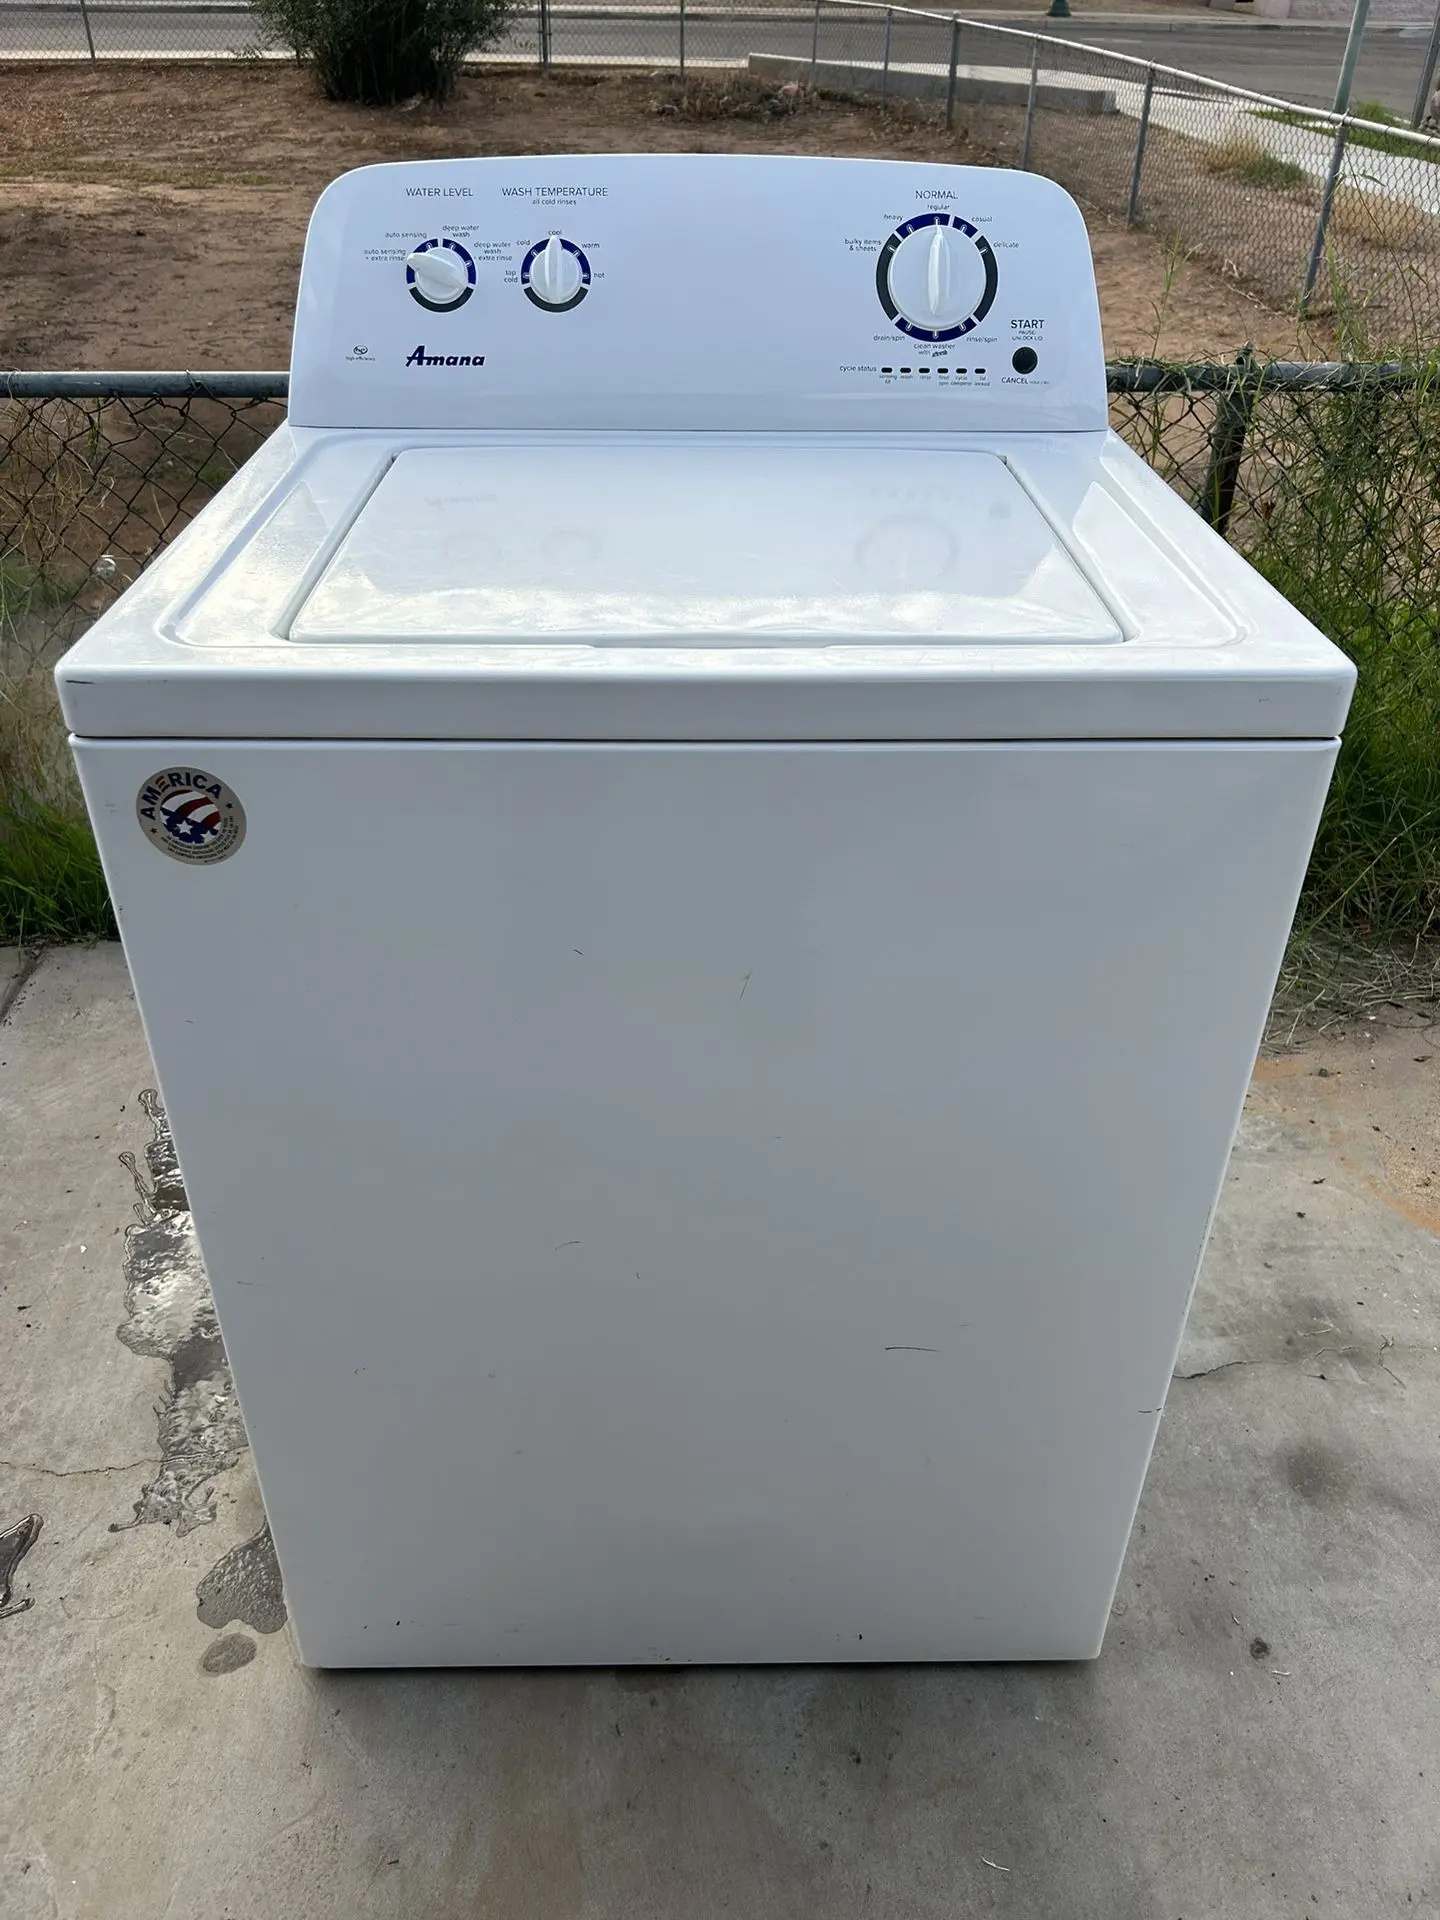 lavadora amana - Cómo sacar el agua de la lavadora amaña